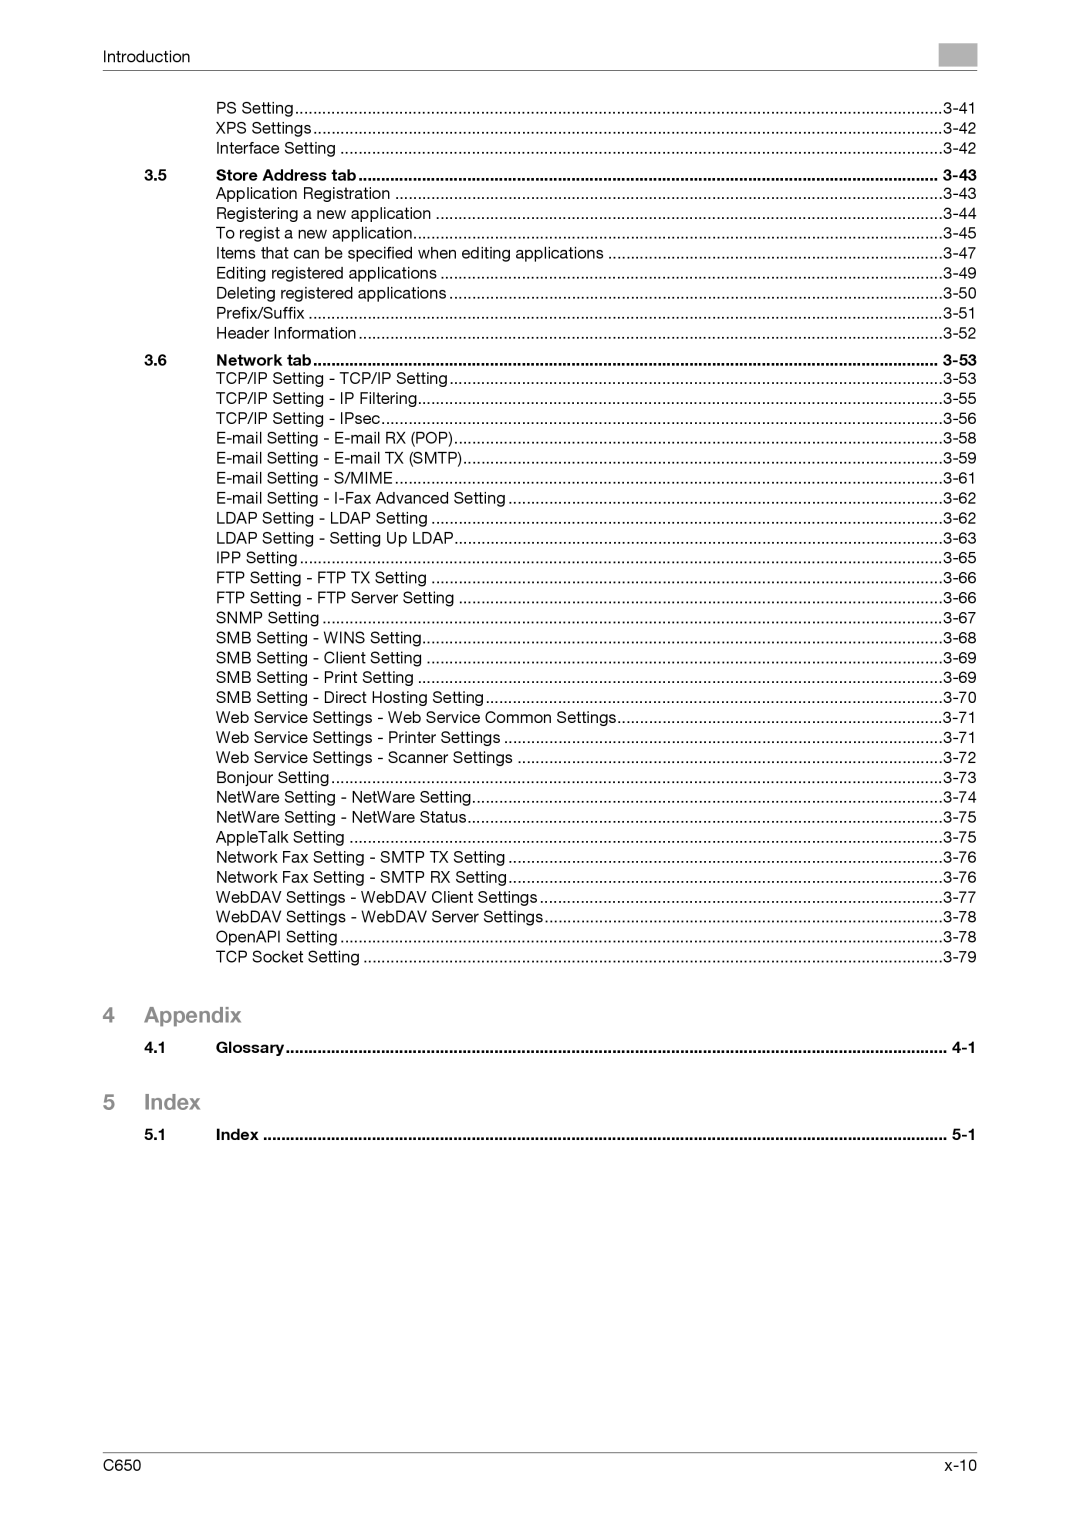 Konica Minolta C650 manual Appendix, Index 